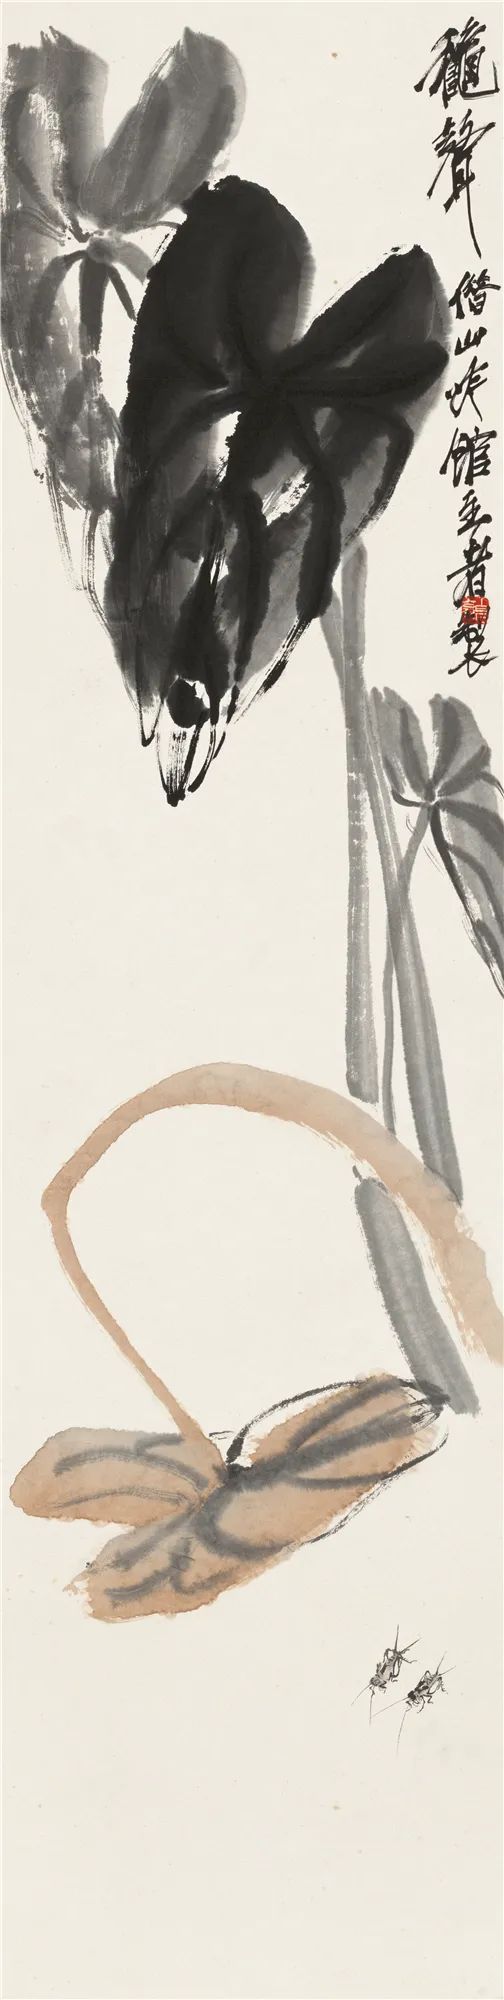 秋声 齐白石 133cm×33cm 无年款 纸本设色 北京画院藏